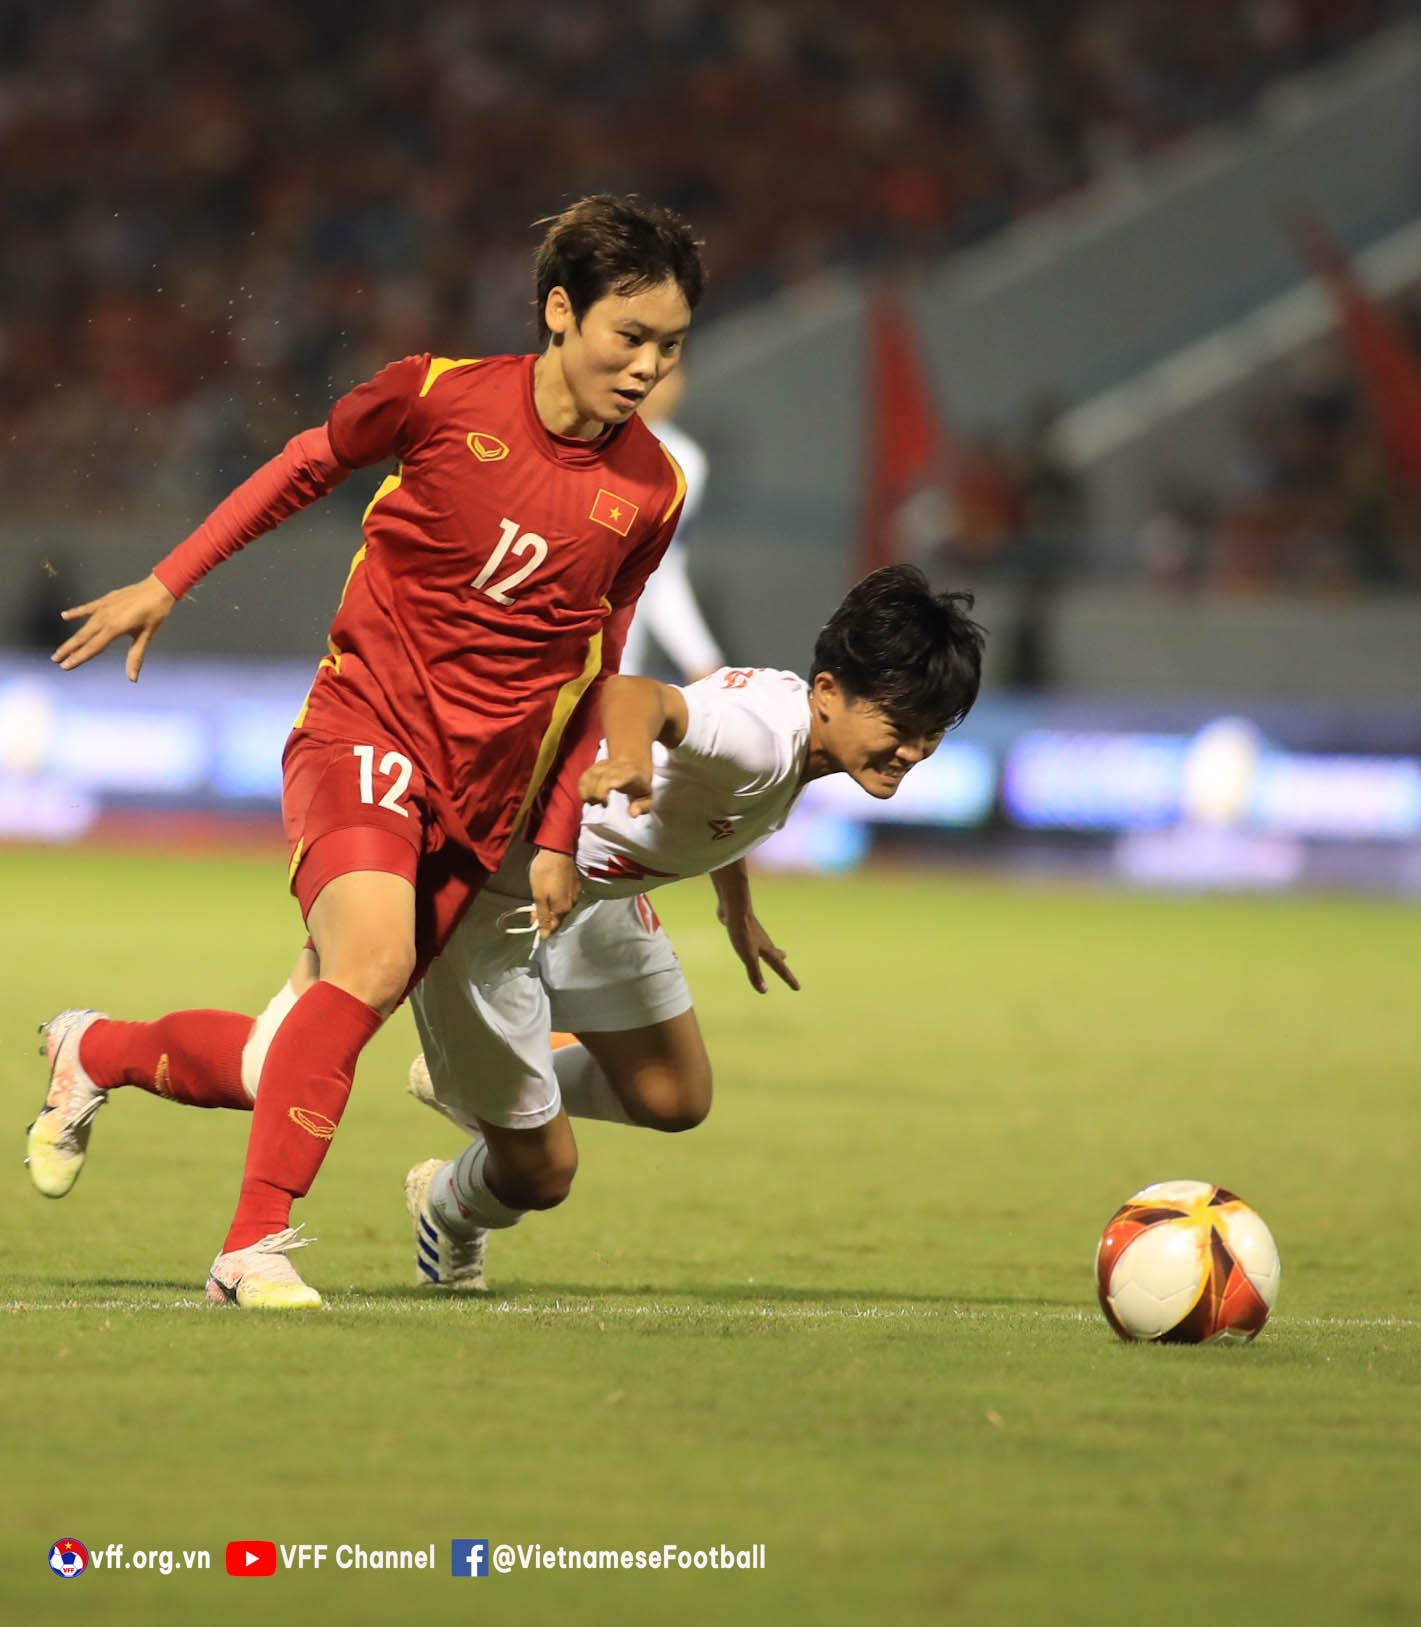 Tuyển Myanmar không phải là đối thủ dễ chơi bởi đội bóng này khá hiểu tuyển Việt Nam đống thời các cầu thủ đội bạn lại có thể hình và sức khỏe khá tốt.